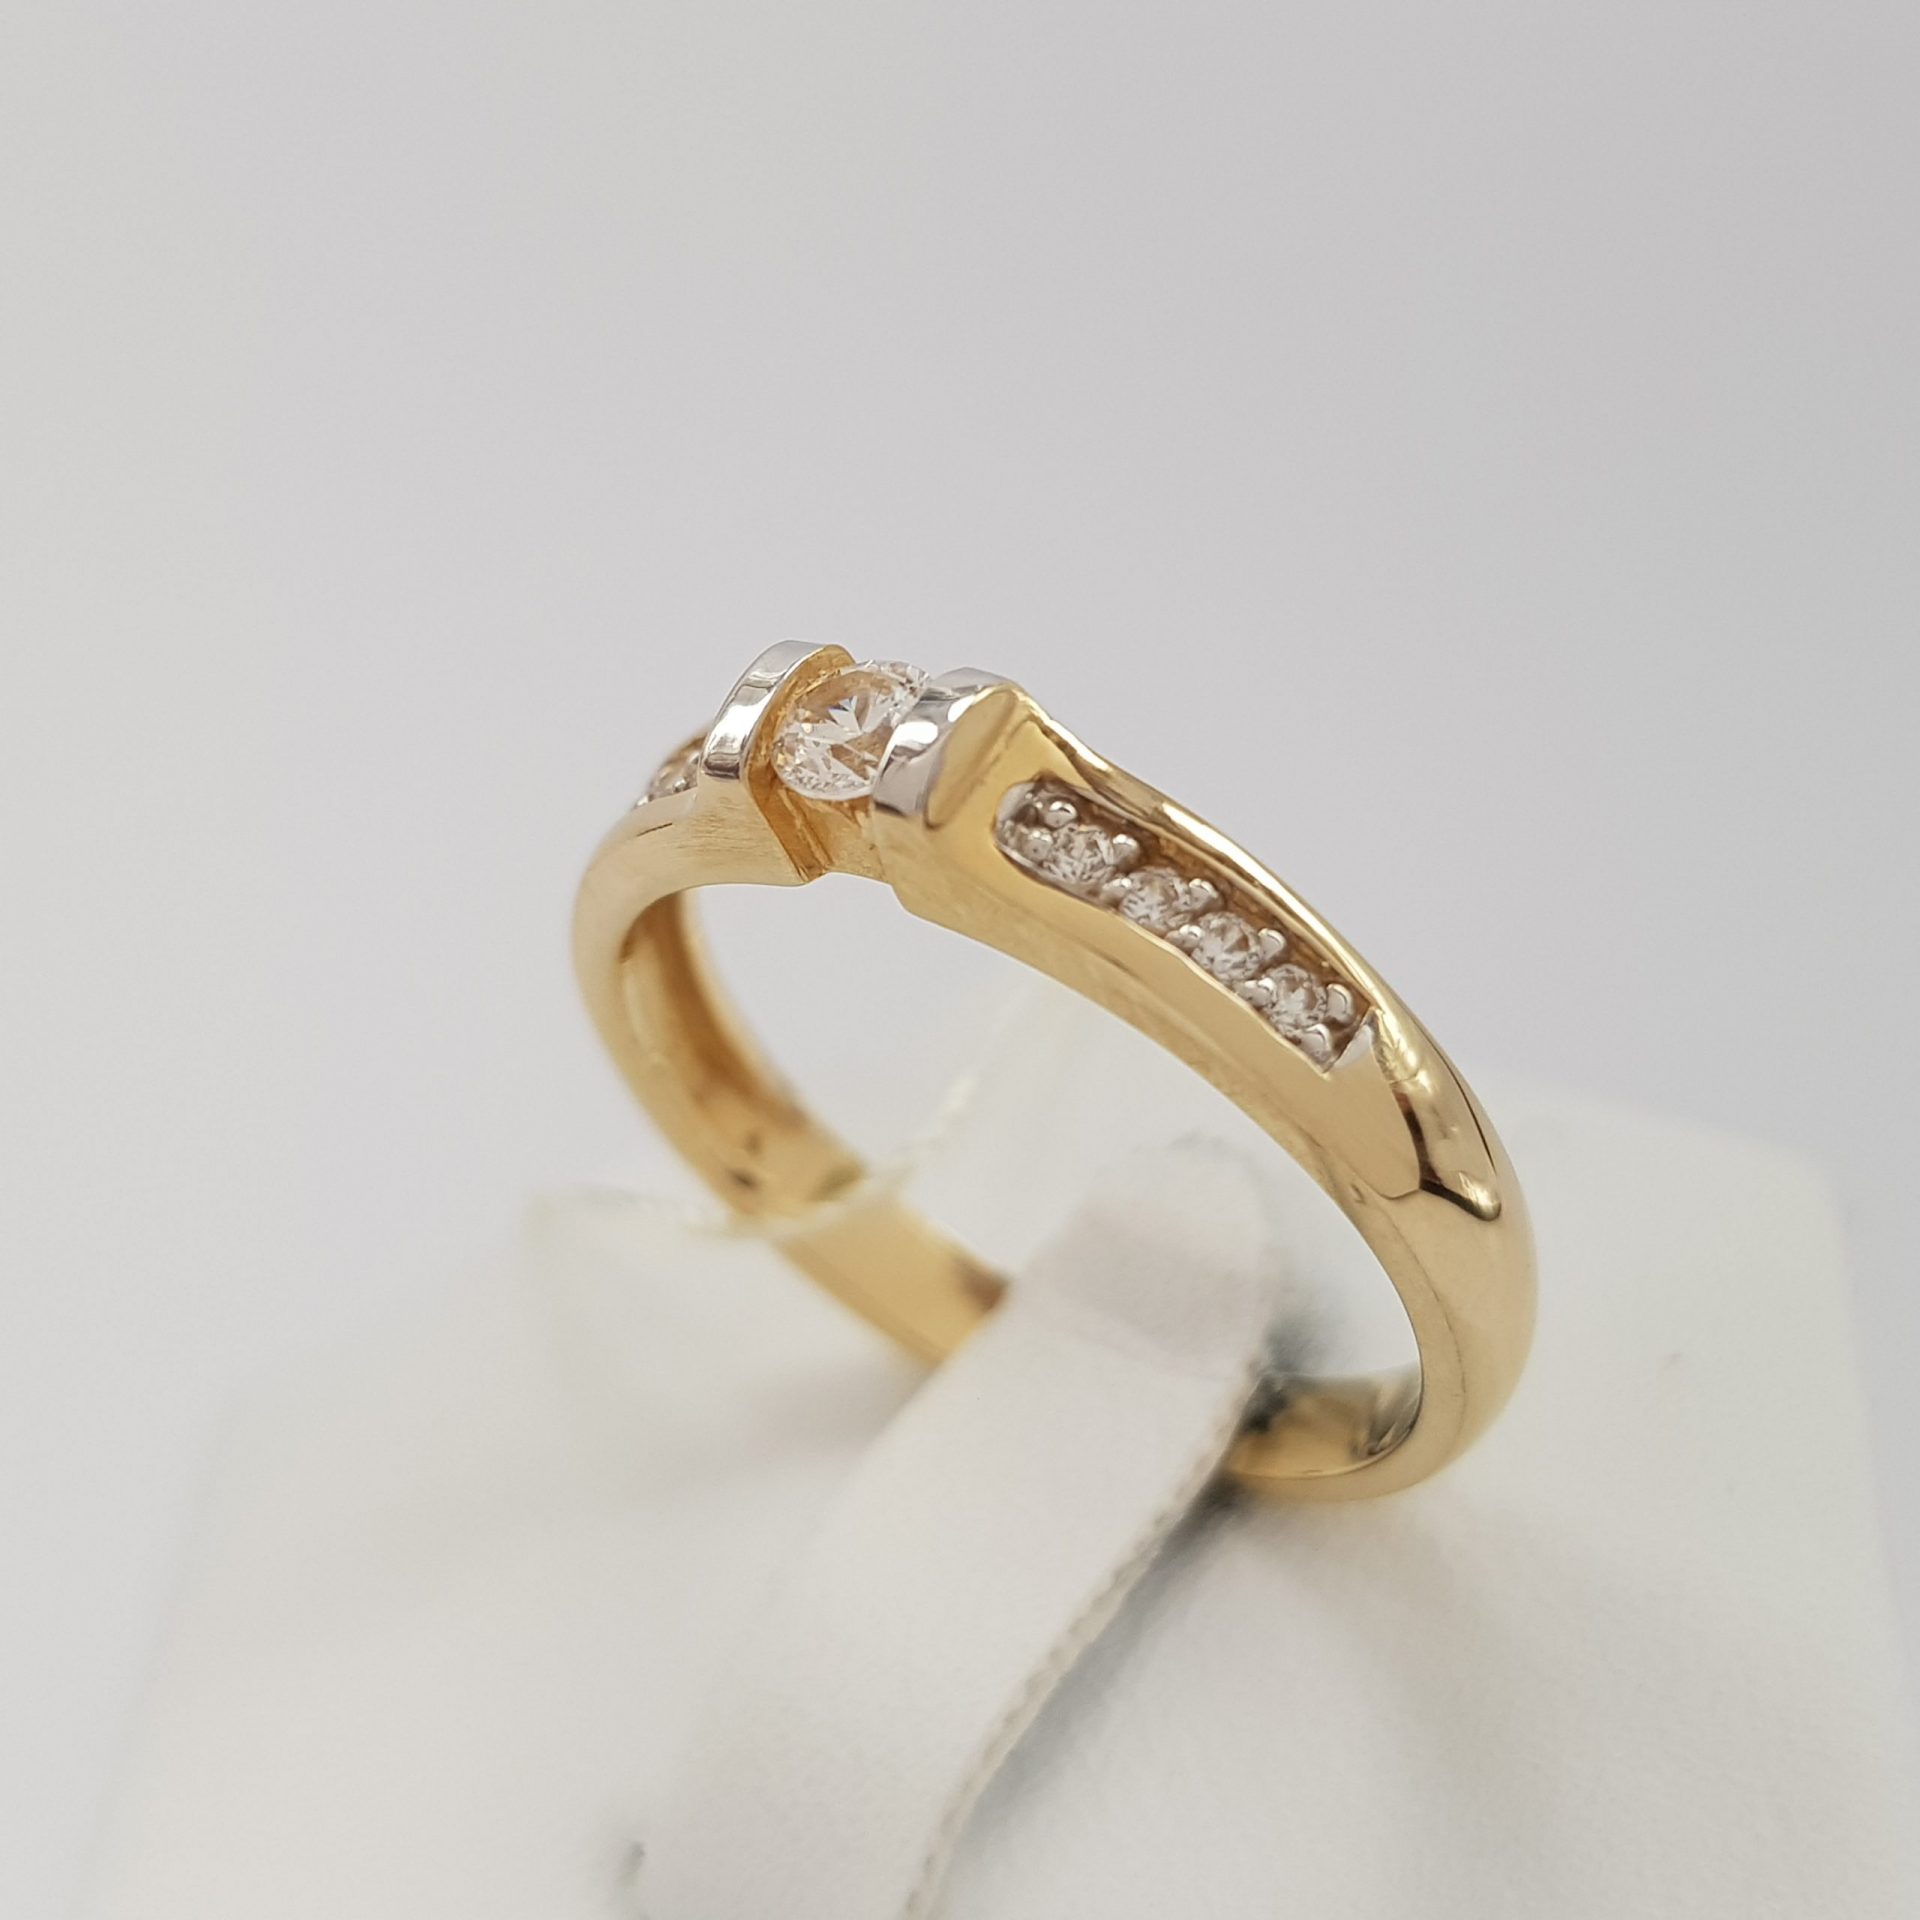 W stylu Tiffany - pierścionek złoty z 9 cyrkoniami